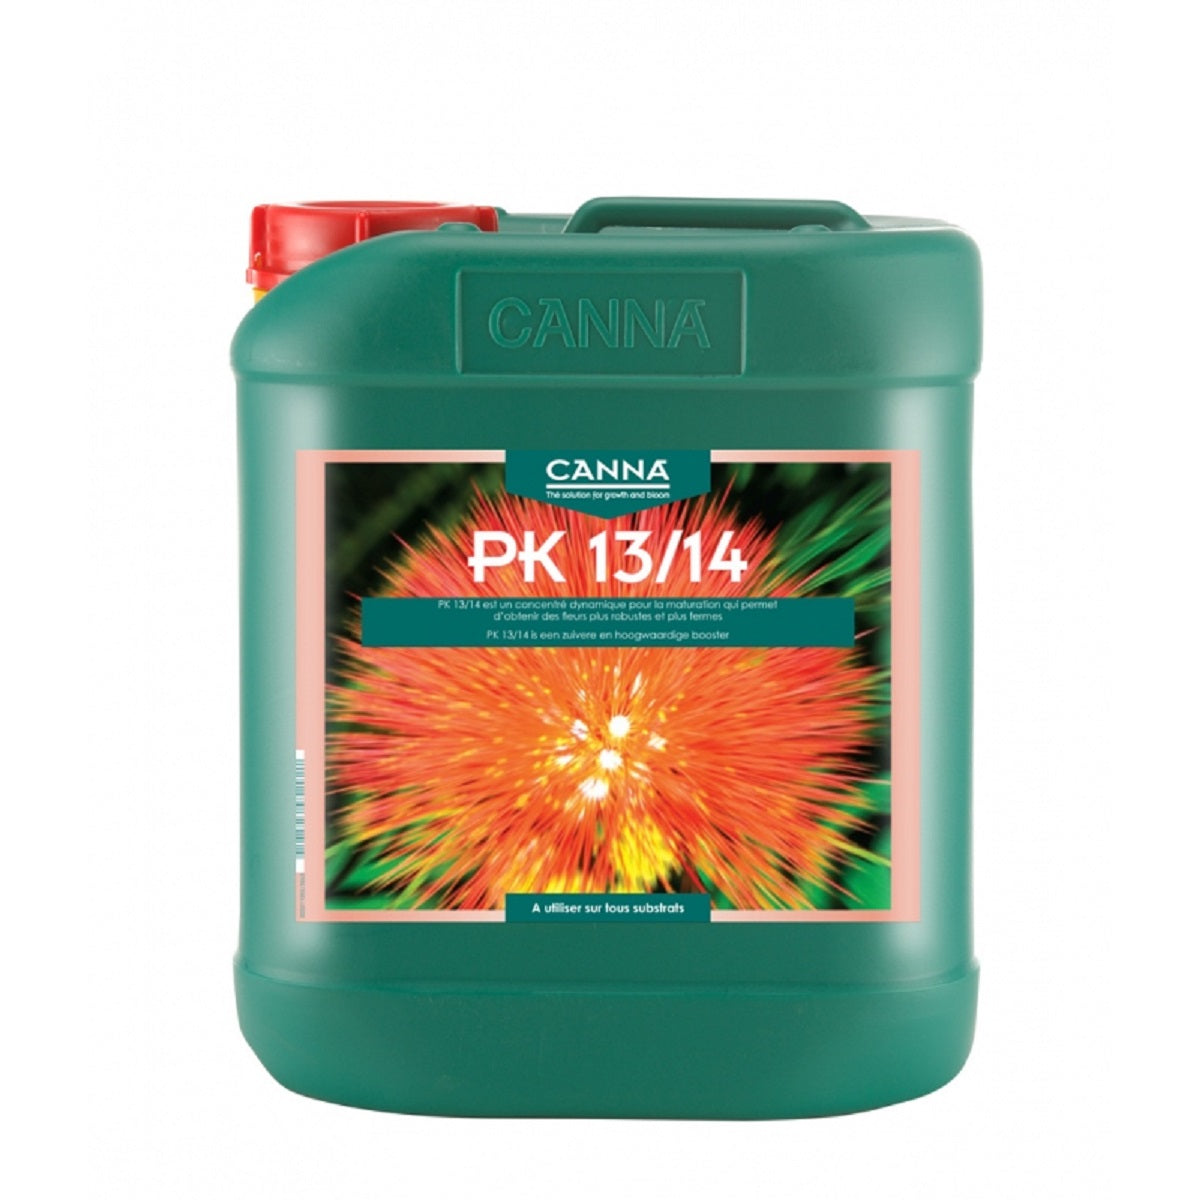 Stimulateur de floraison CANNA PK 13/14 5 litres